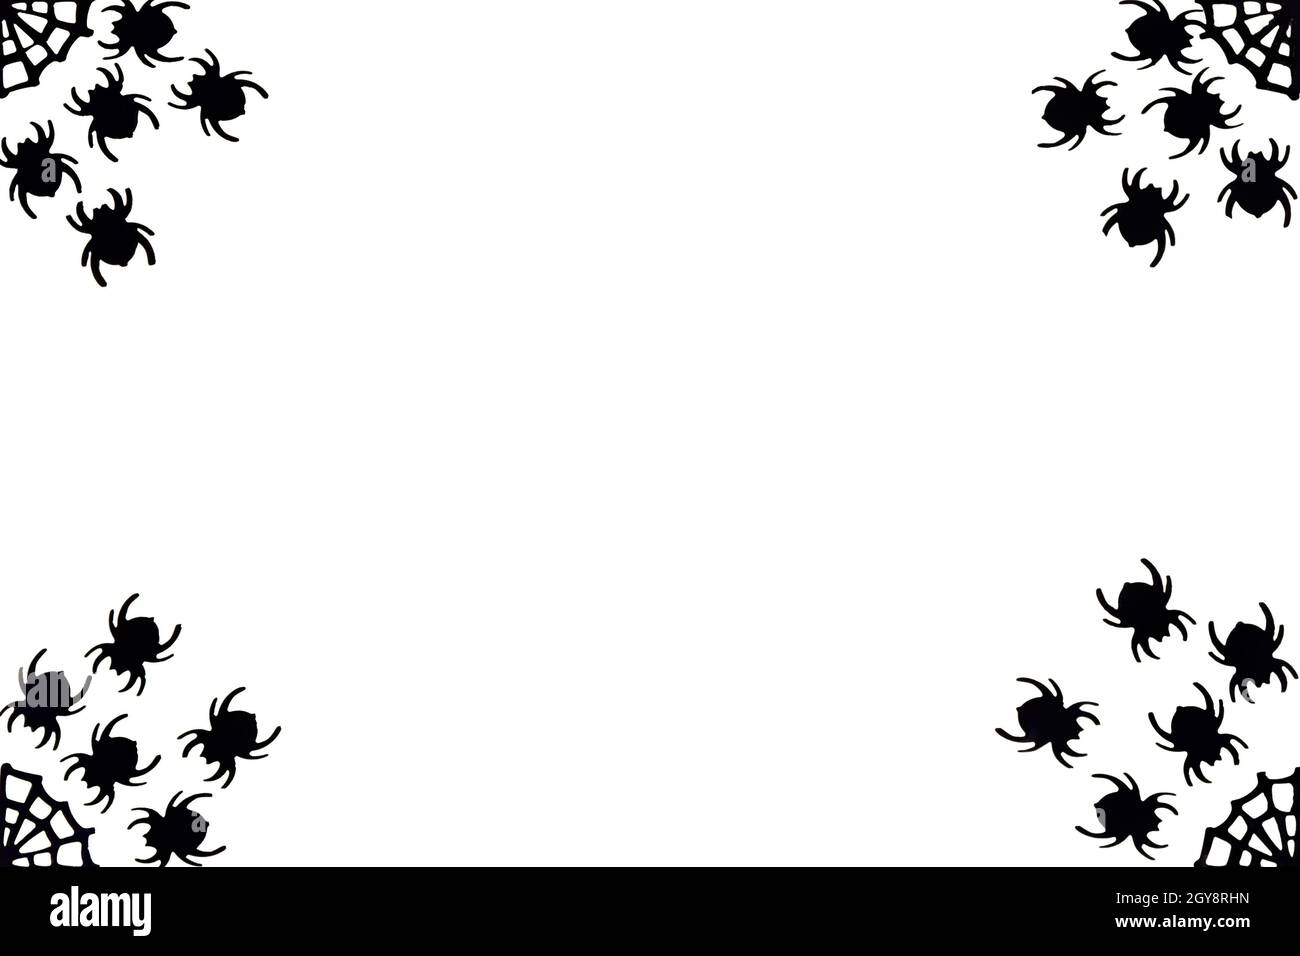 Festlicher schwarz-weißer Hintergrund für Halloween. Schwarze Spinnen, die in den Ecken auf dem Netz laufen. Platzieren Sie den Text in der Mitte. Stockfoto